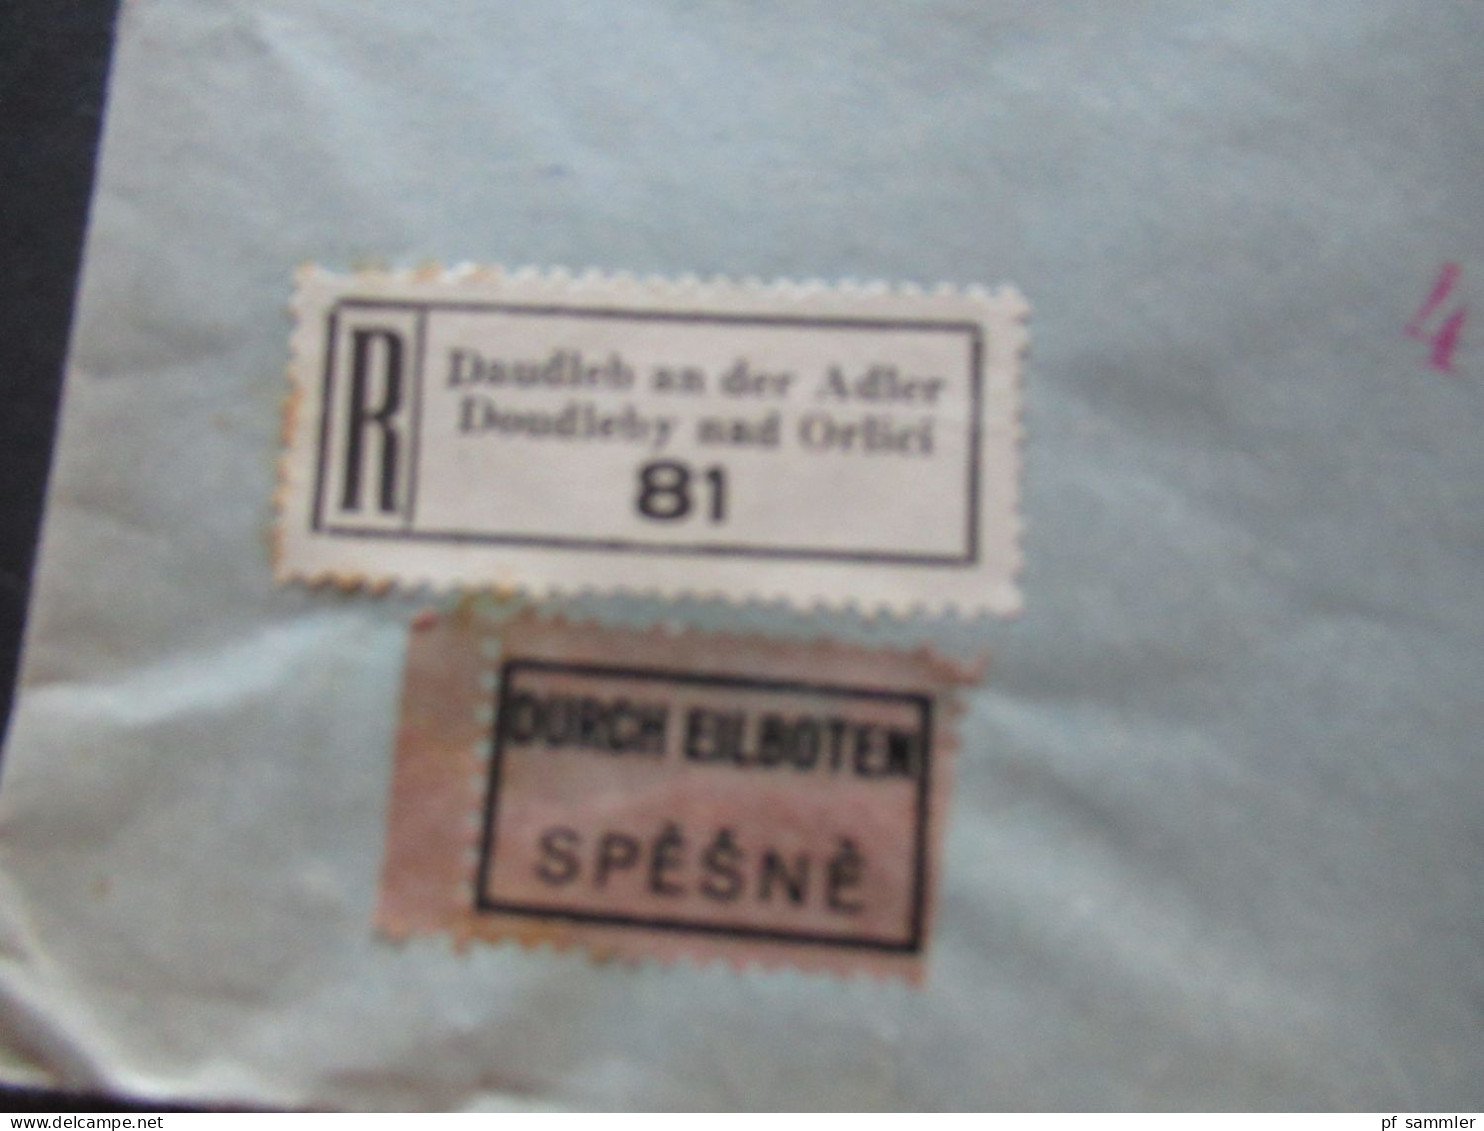 Böhmen Und Mähren 1942 Hitler Marken MiF Einschreiben Daudleb An Der Adler Doudleby Nad Orlici Durch Eilboten Nach Prag - Covers & Documents